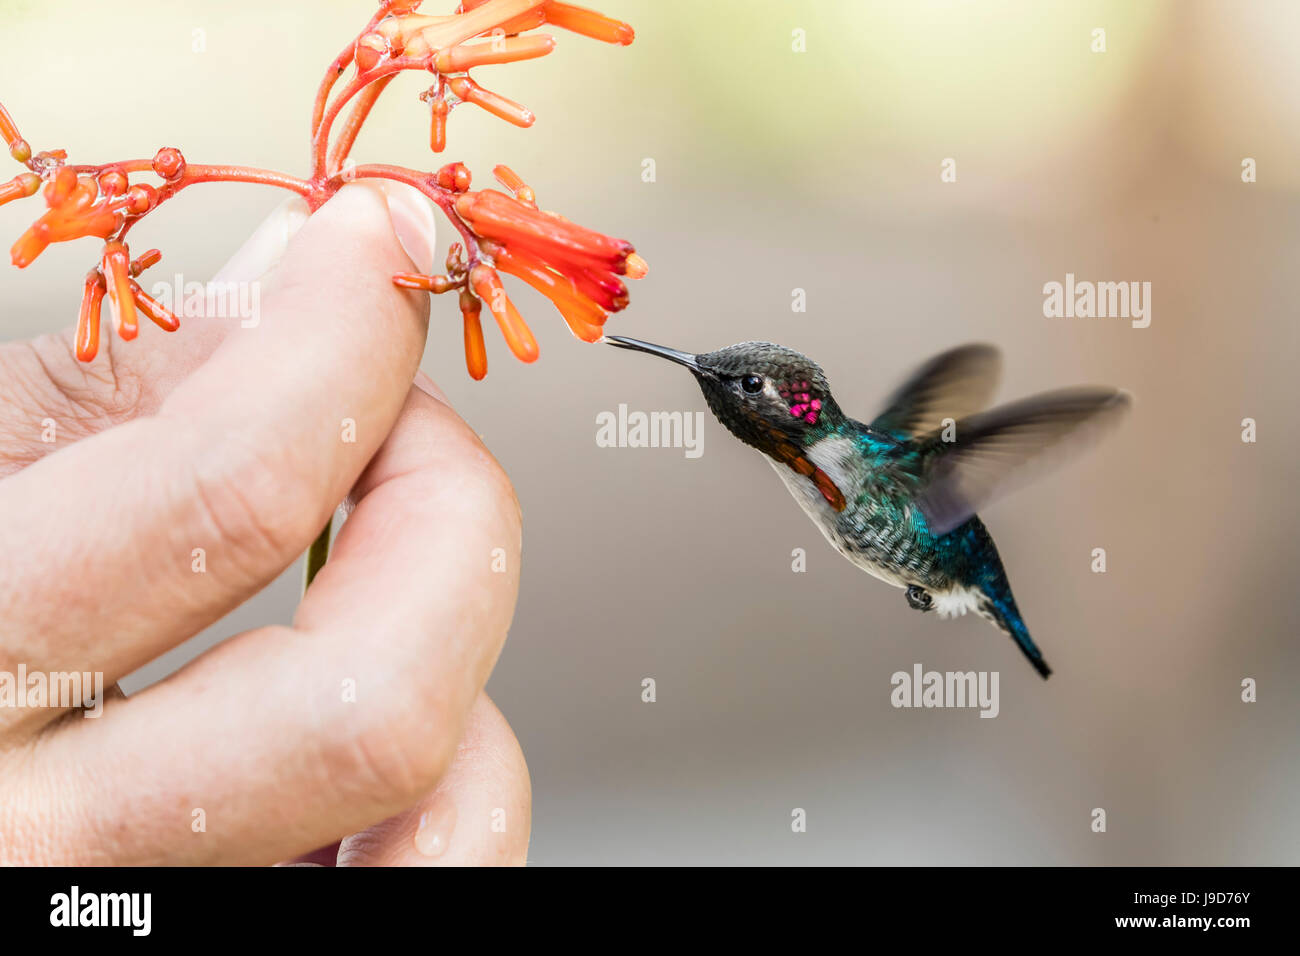 Un colibri d'hommes adultes sauvages (Mellisuga helenae), attirés par les fleurs à main près de Playa Larga, de Cuba, des Caraïbes Banque D'Images